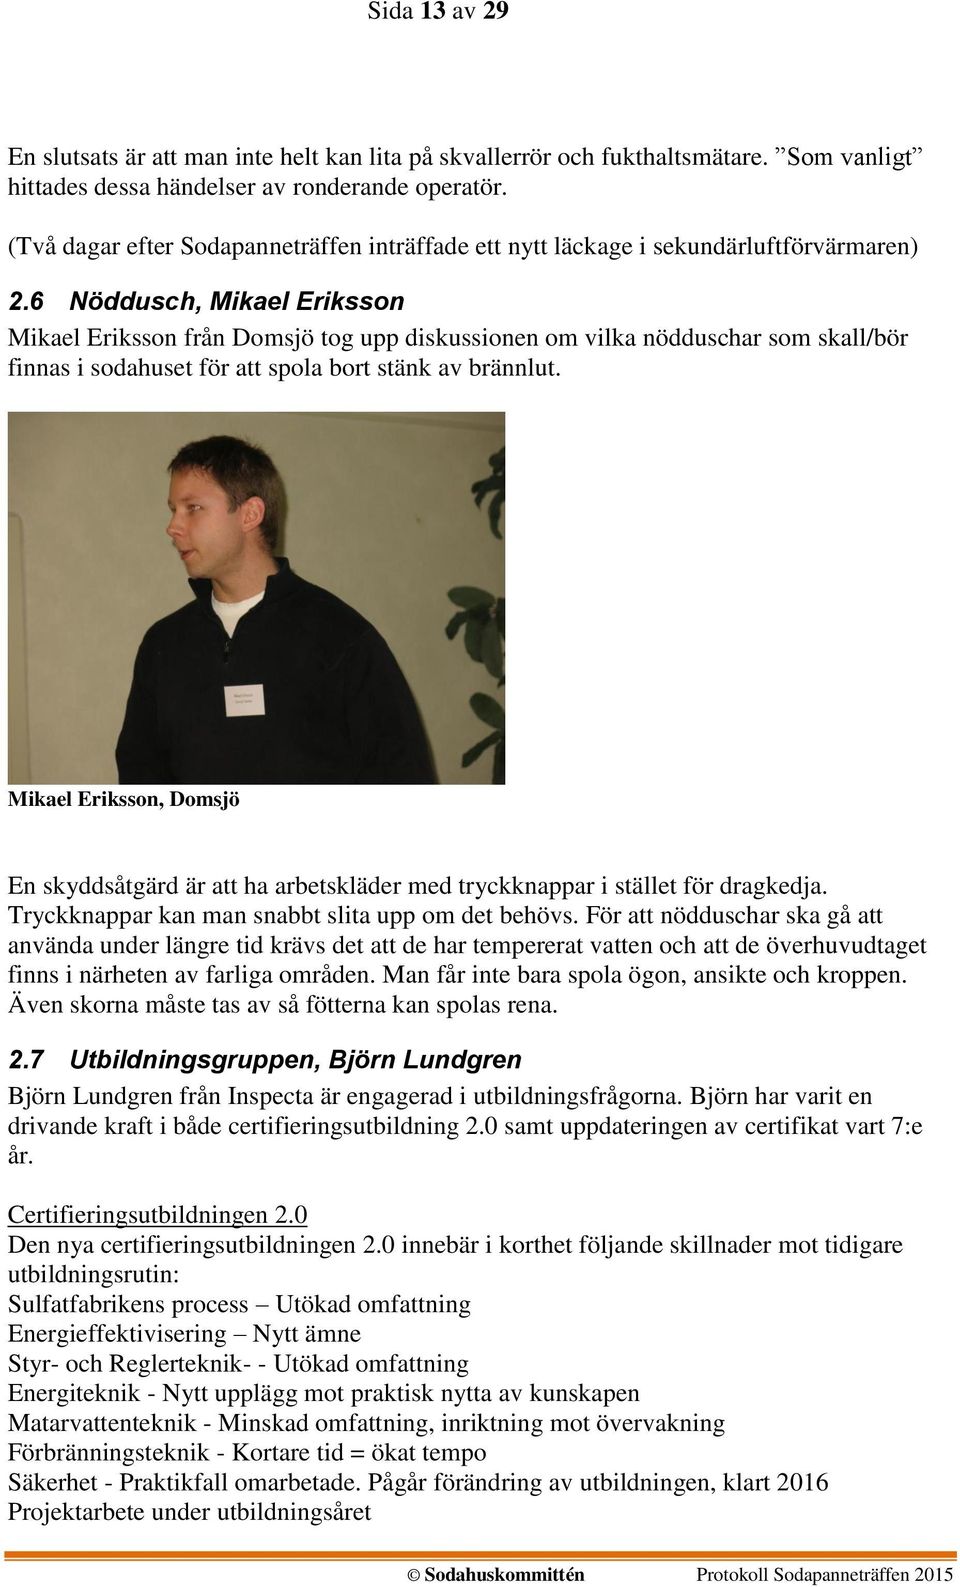 6 Nöddusch, Mikael Eriksson Mikael Eriksson från Domsjö tog upp diskussionen om vilka nödduschar som skall/bör finnas i sodahuset för att spola bort stänk av brännlut.